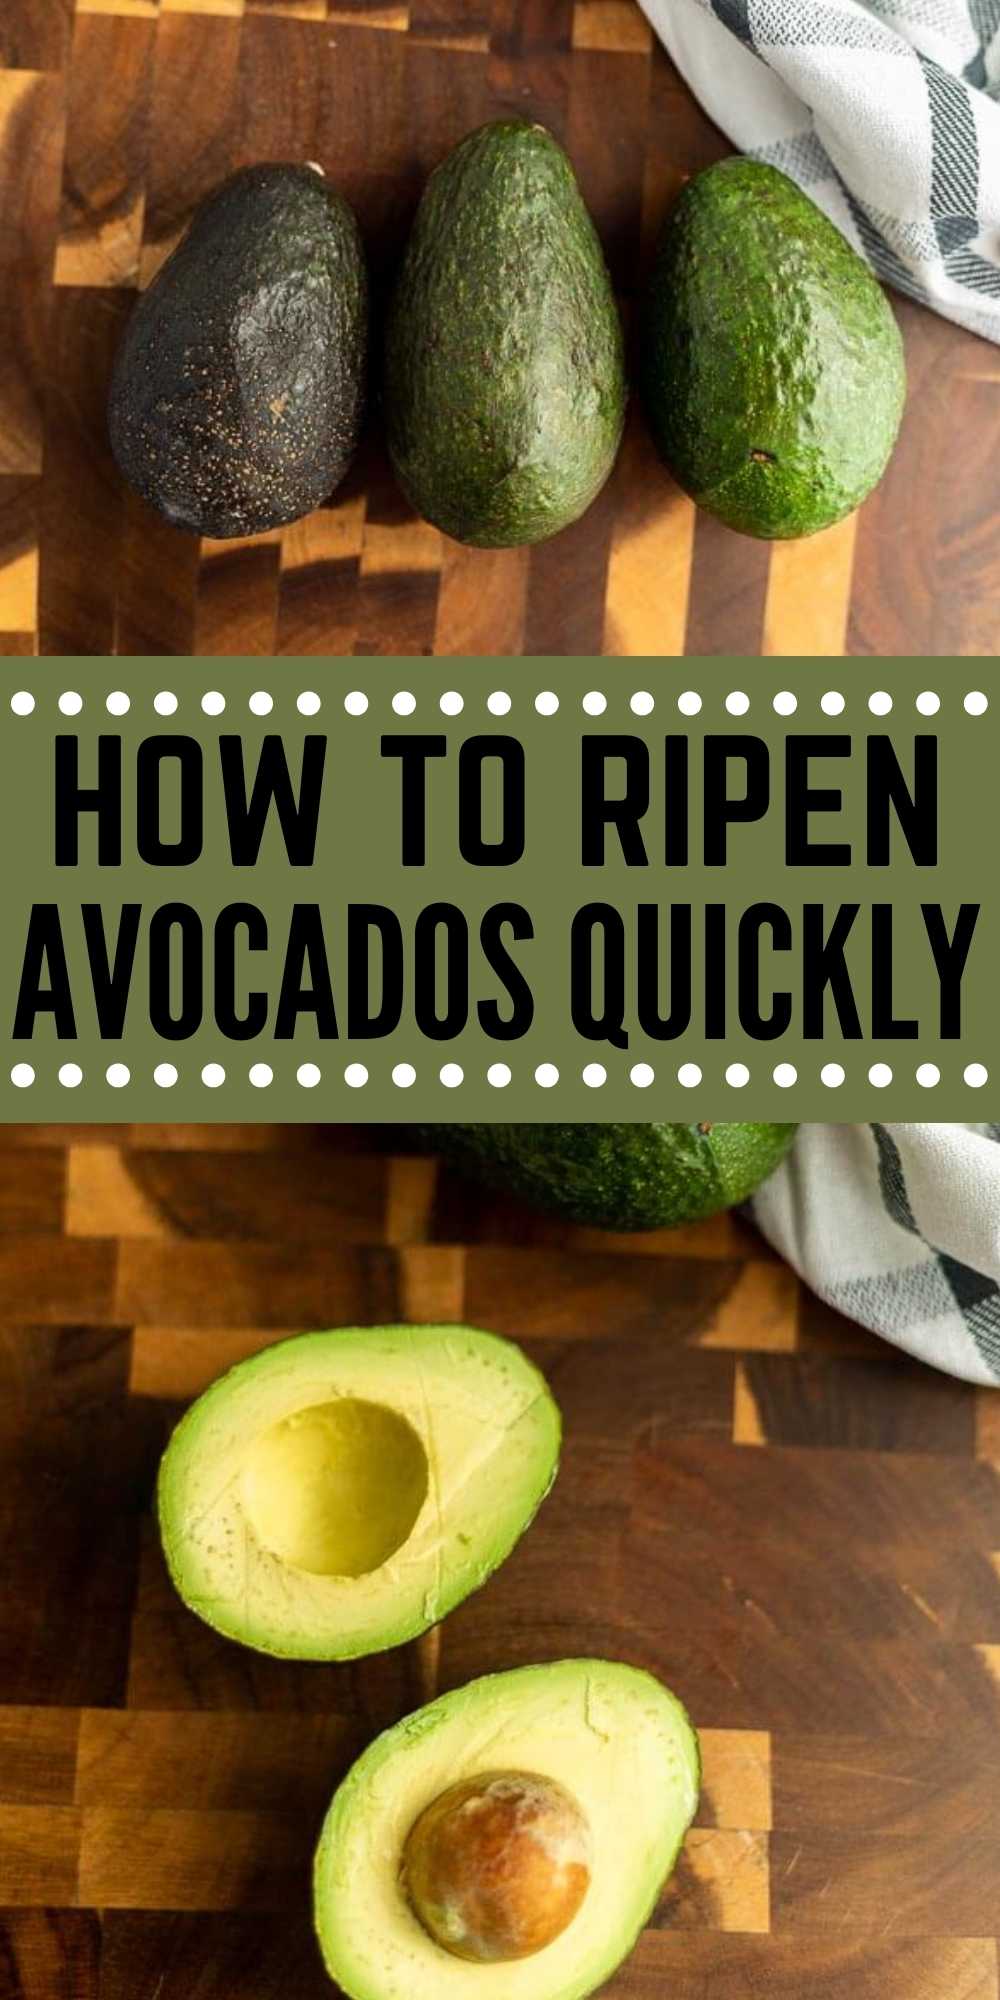 https://www.eatingonadime.com/wp-content/uploads/2022/02/How-to-Ripen-Avocados-Pin-3.jpg